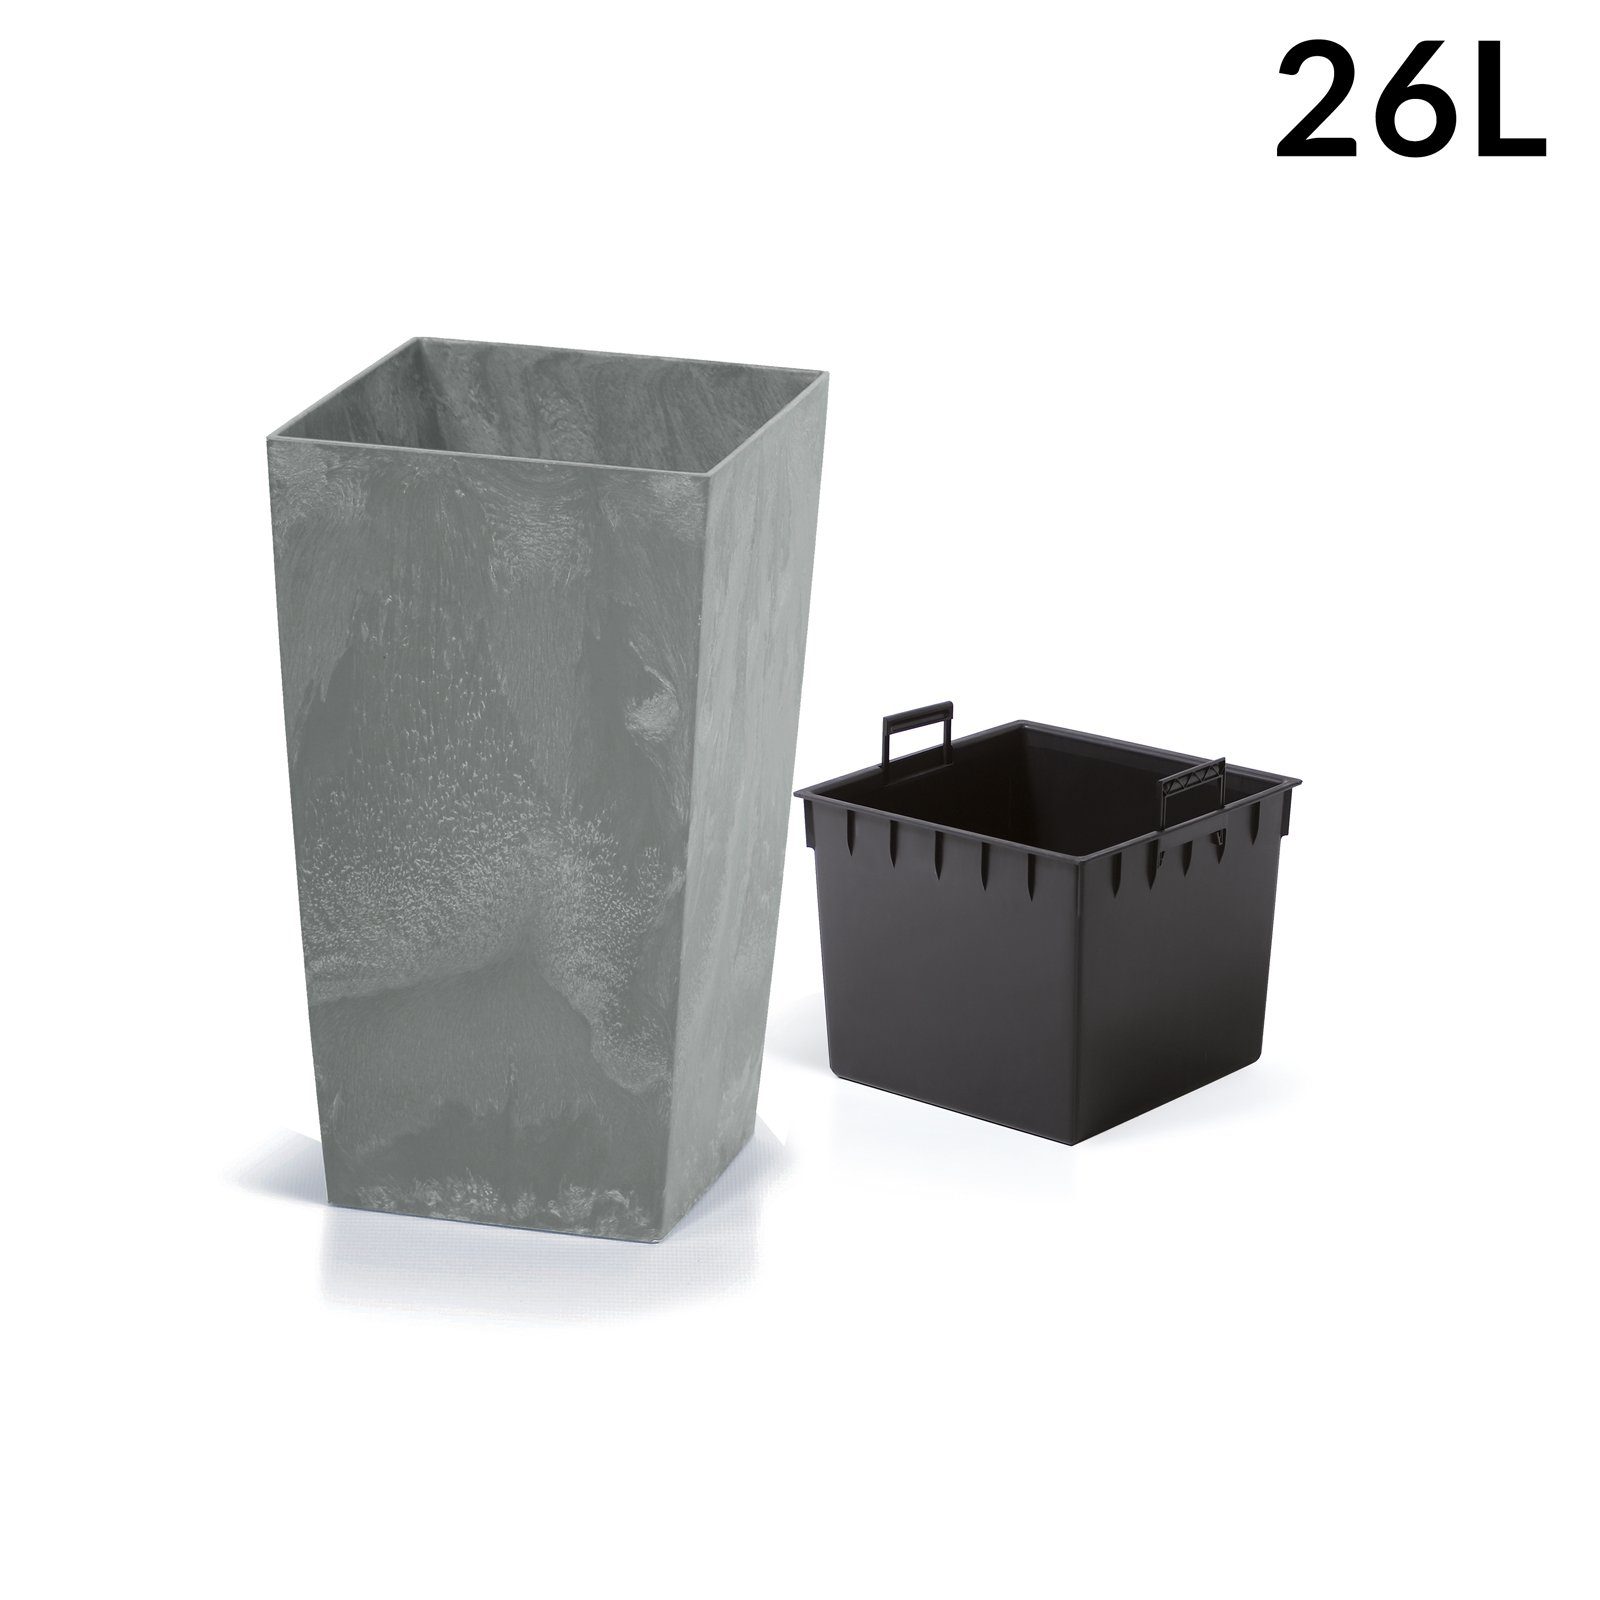 26L Inkl. Betonoptik Deuba Pflanzkübel, Einlegeboden Outdoor 50x26,5x26,5cm Indoor Grau